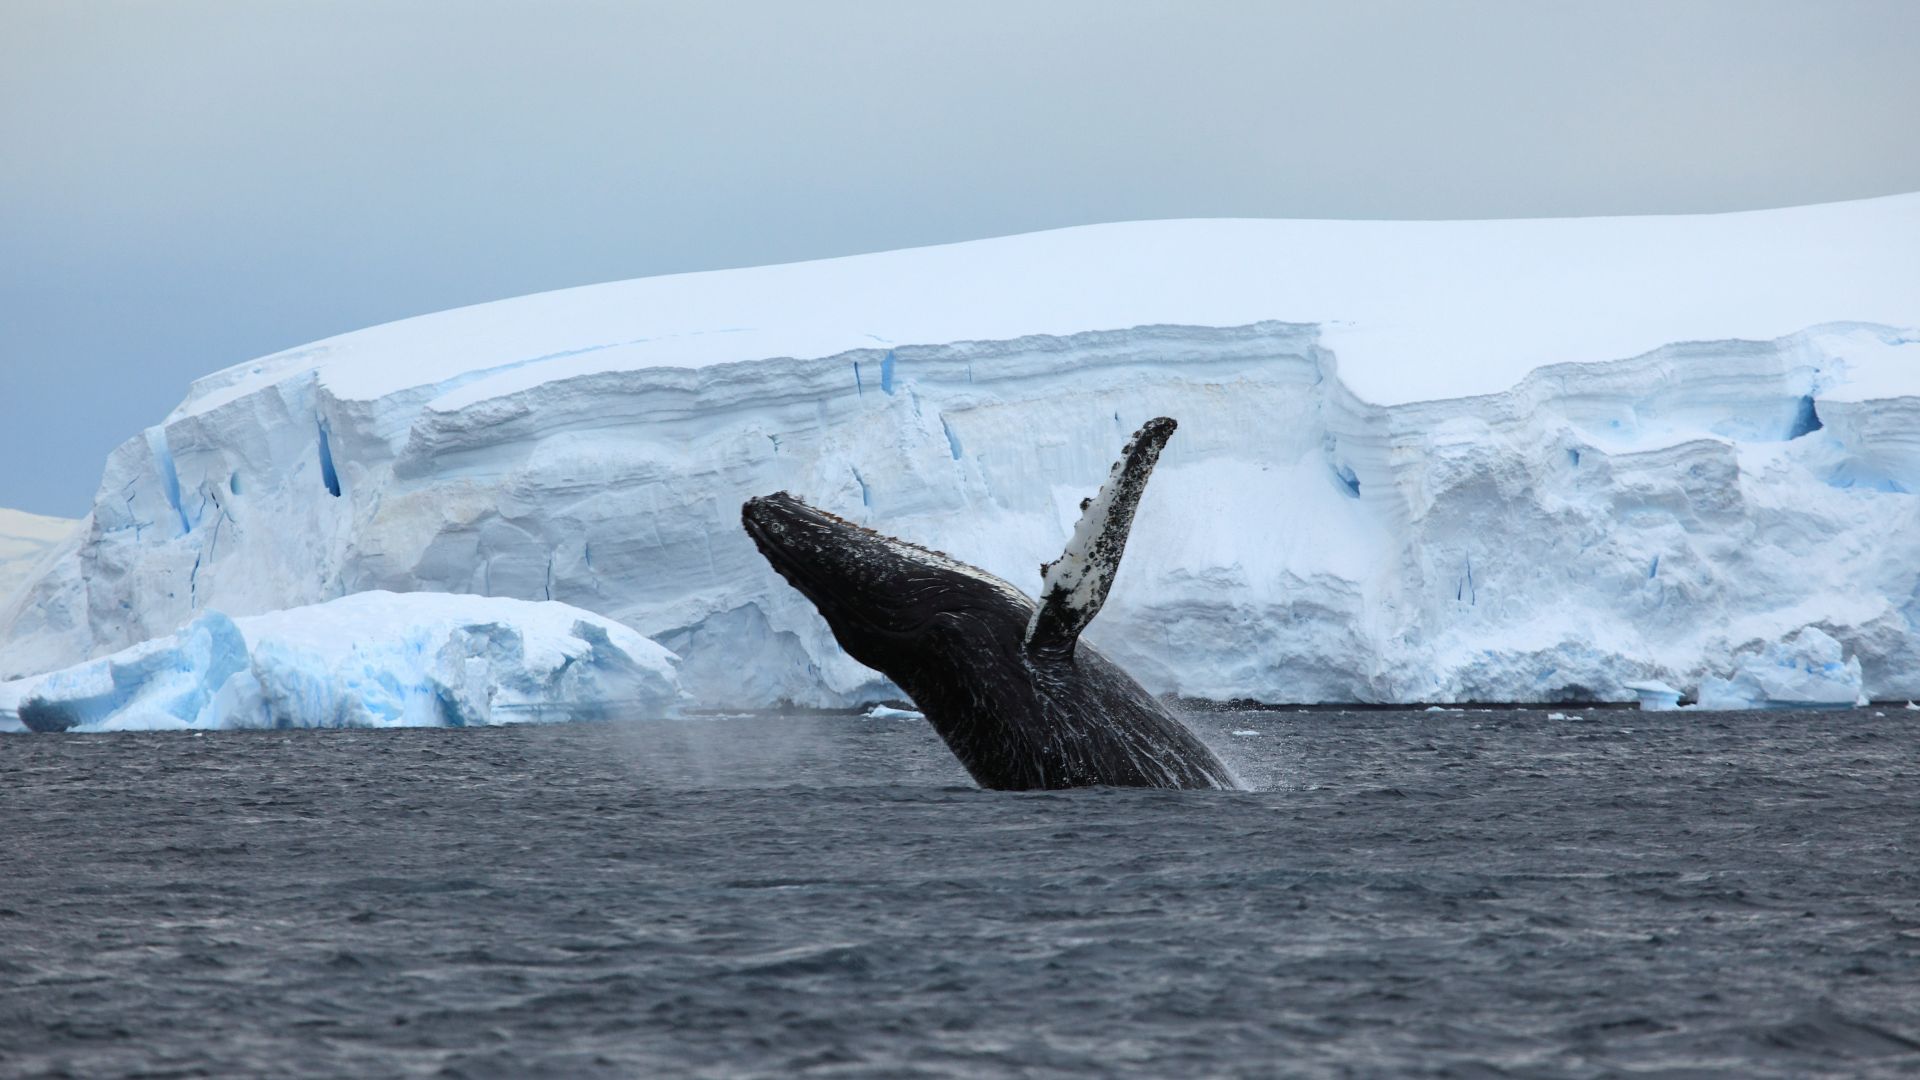 Антарктида, океан, кит, Antarctica, ocean, ice, whale, 4k (horizontal)